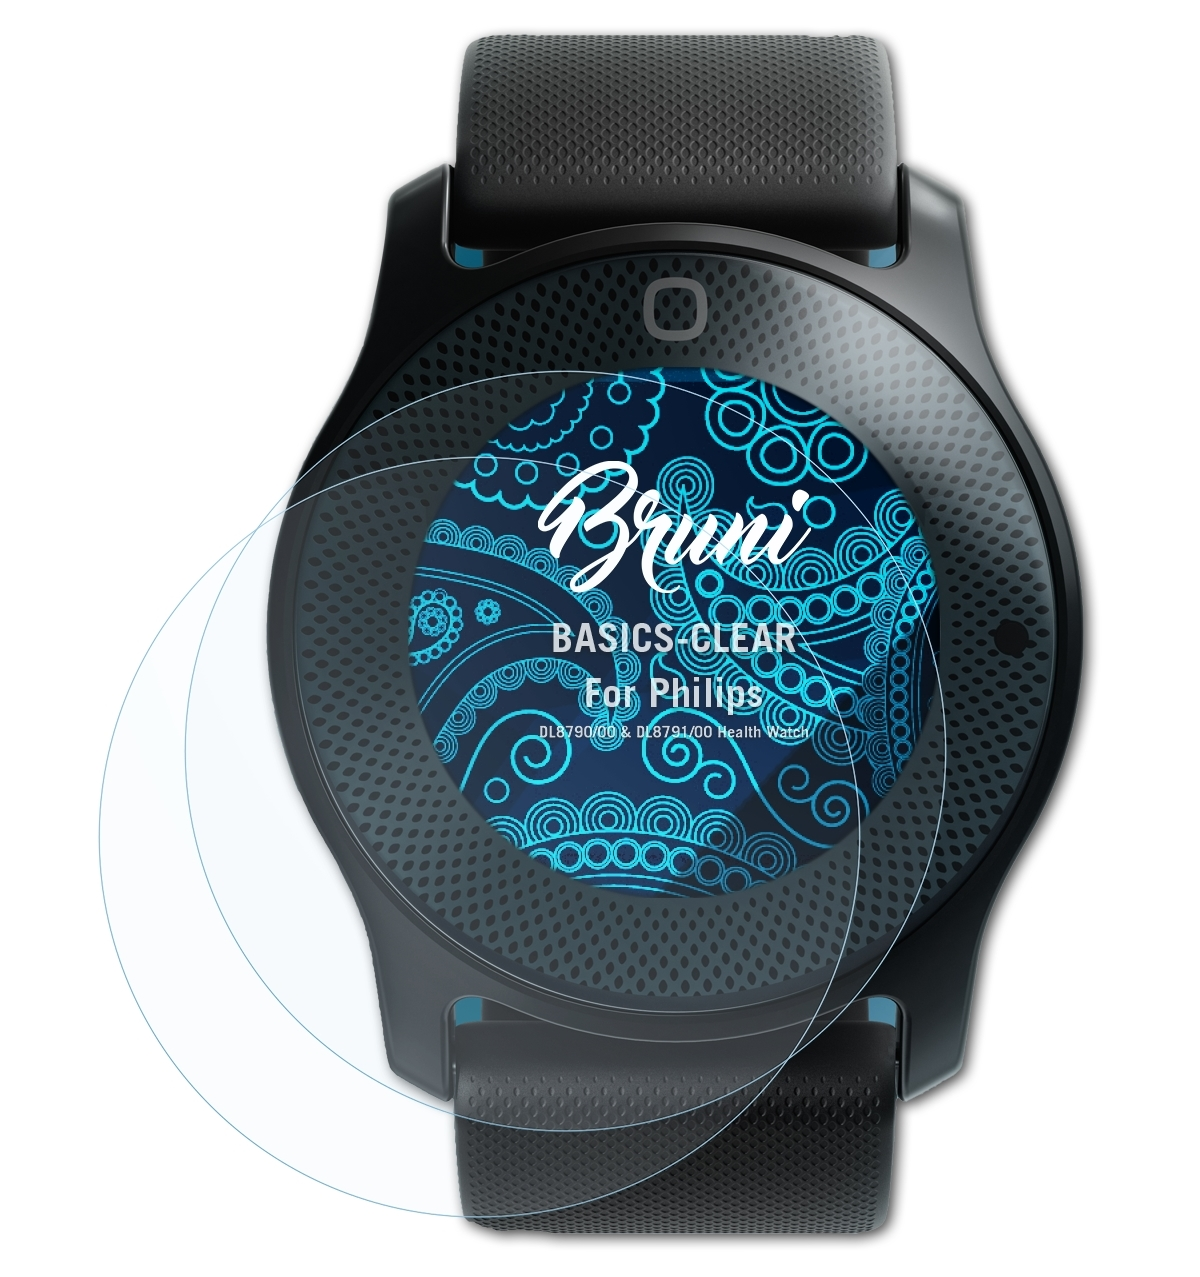 & DL8790/00 Watch)) BRUNI Basics-Clear Schutzfolie(für Philips 2x (Health DL8791/00